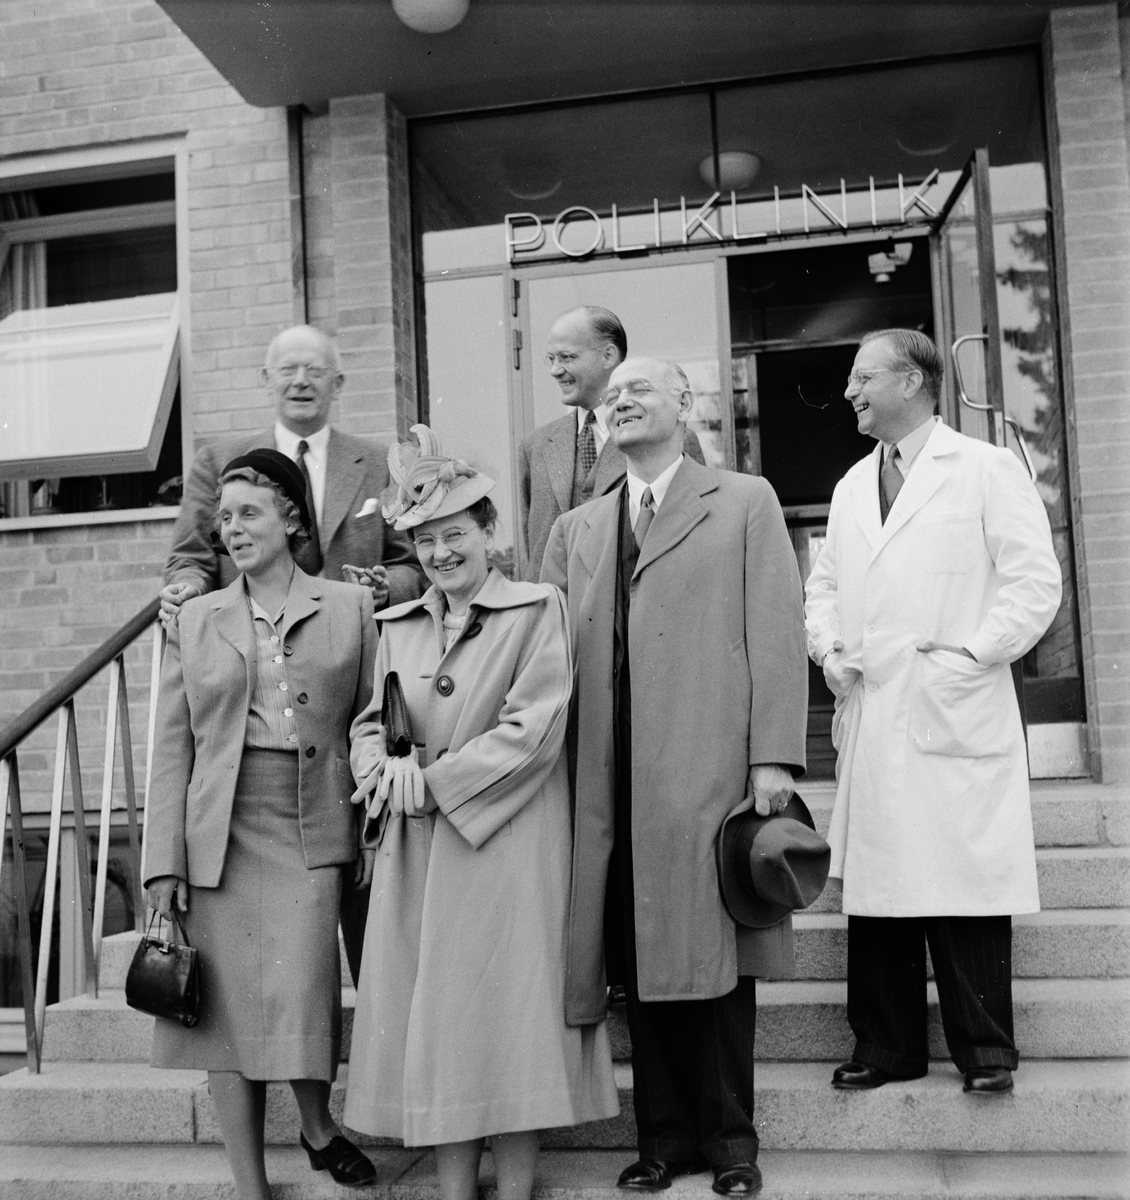 Professor Whitehorn med sällskap utanför Polikliniken, Akademiska sjukhuset, Uppsala 1947